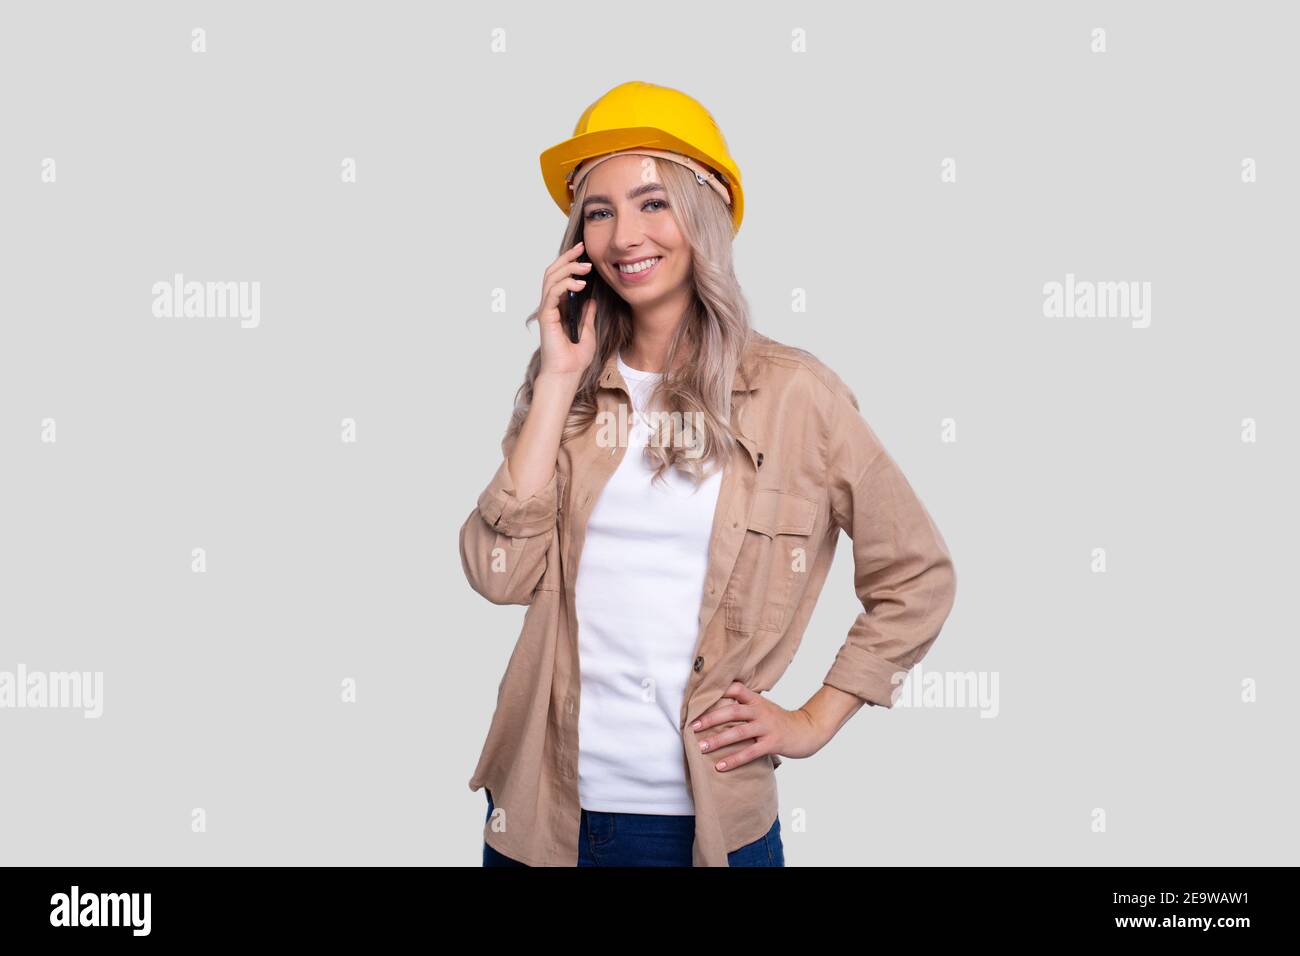 Mädchen Bauarbeiter smilling Gespräch am Telefon beobachten Front isoliert. Mädchen, Die Arbeitet. Moderne Konstruktion, Technik, Arbeitskonzept Stockfoto